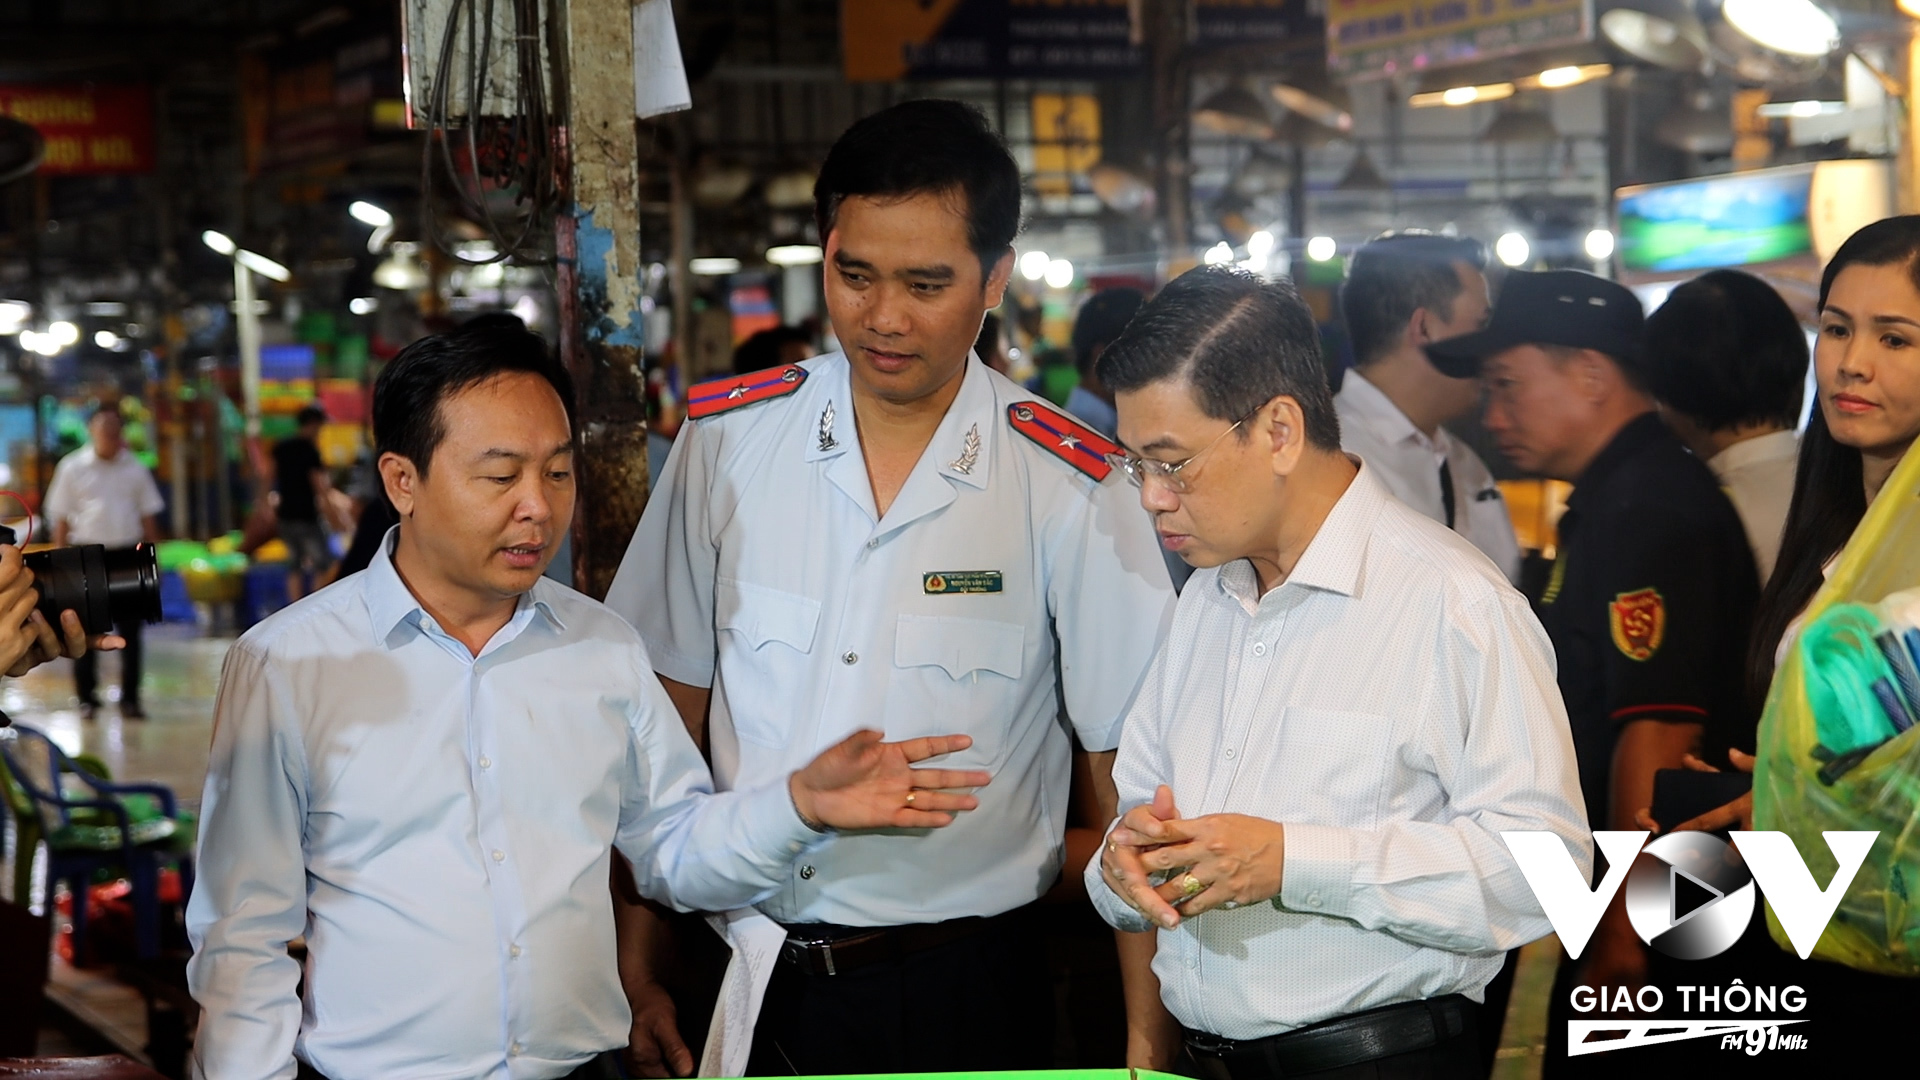 Phó Chủ tịch UBND TP.HCM Nguyễn Văn Dũng khảo sát tại chợ đầu mối Bình Điền